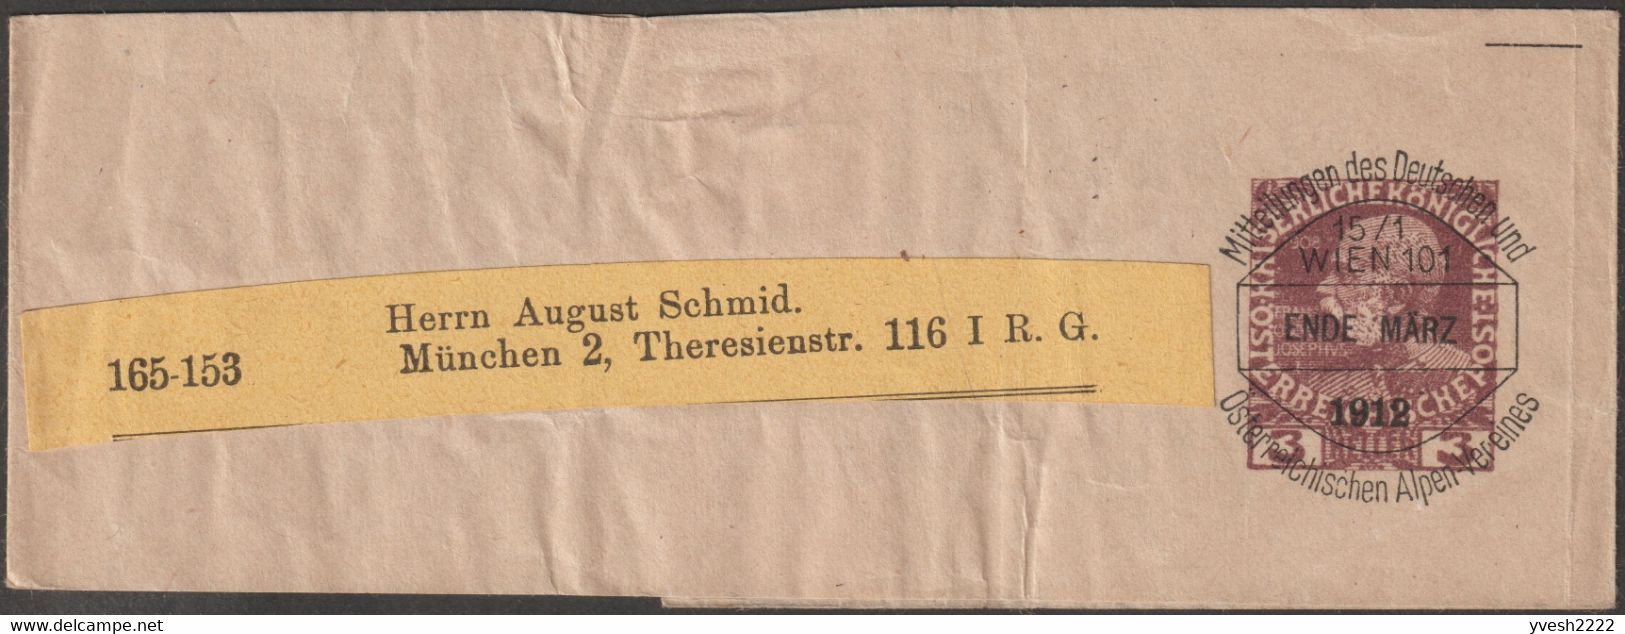 Autriche 1898 à 1920. 16 bandes-journal timbrées sur commande & préoblitérées. Association alpestre germano-autrichienne